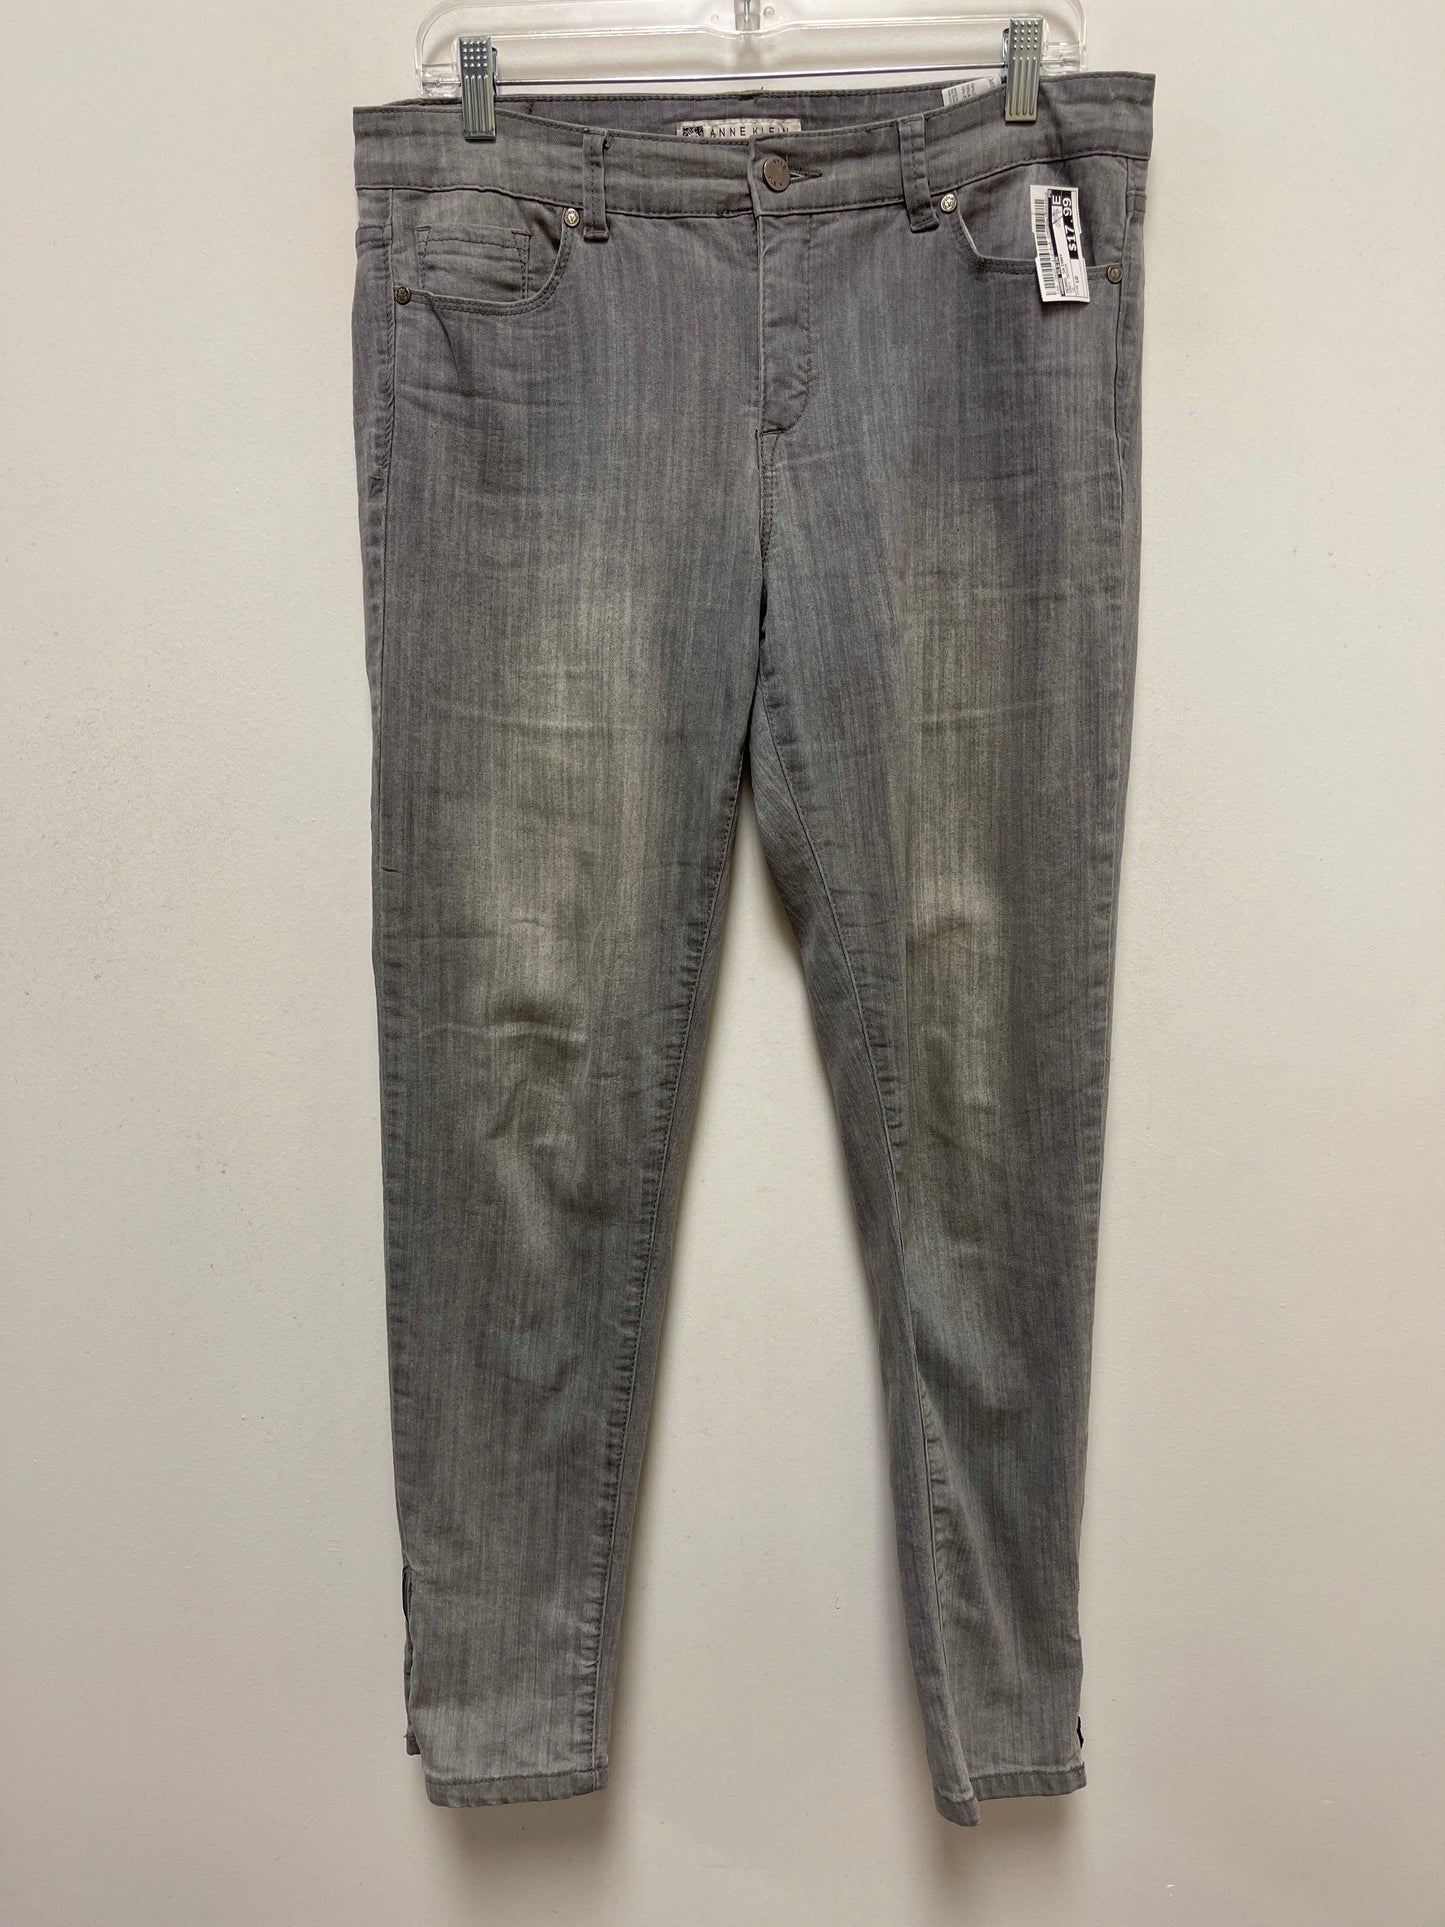 Grey Denim Jeans Skinny Anne Klein, Size 10